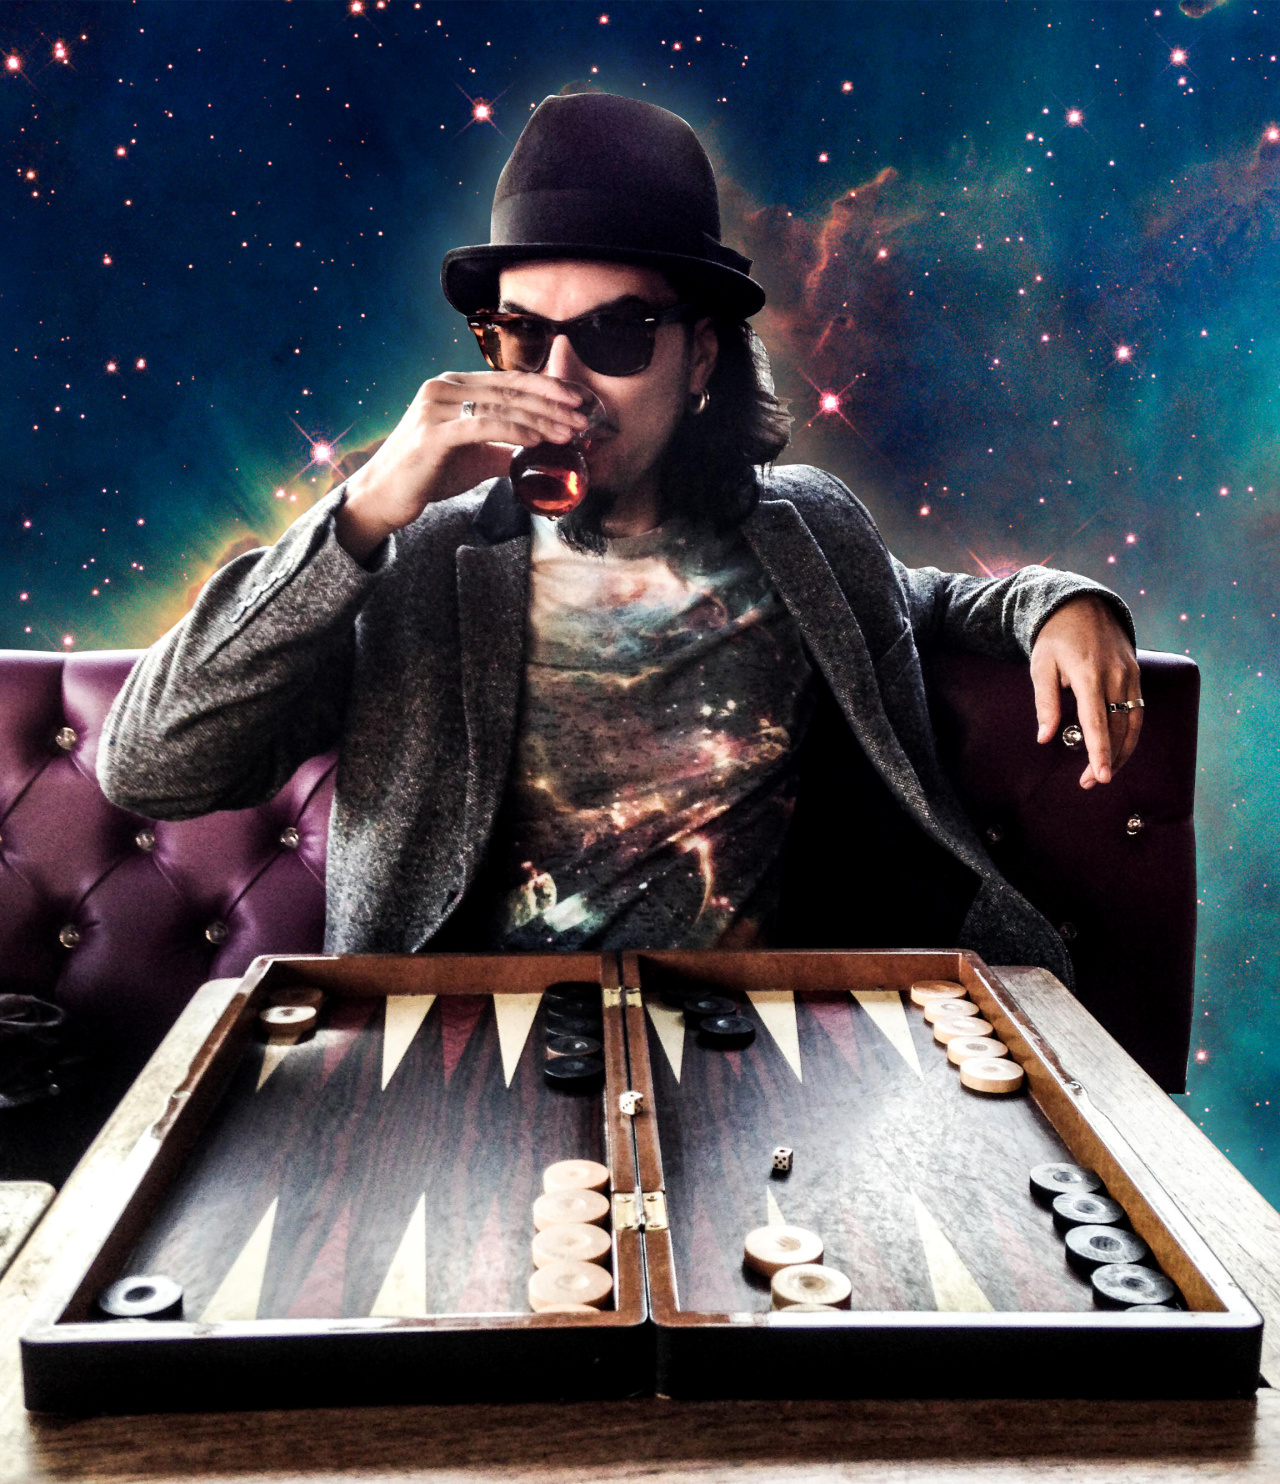 Der Künstler Memo Aktens in einer futuristischen Sternenhimmelcolage sitzt vor einem Backgammon Spiel und trinkt türkischen Tee.